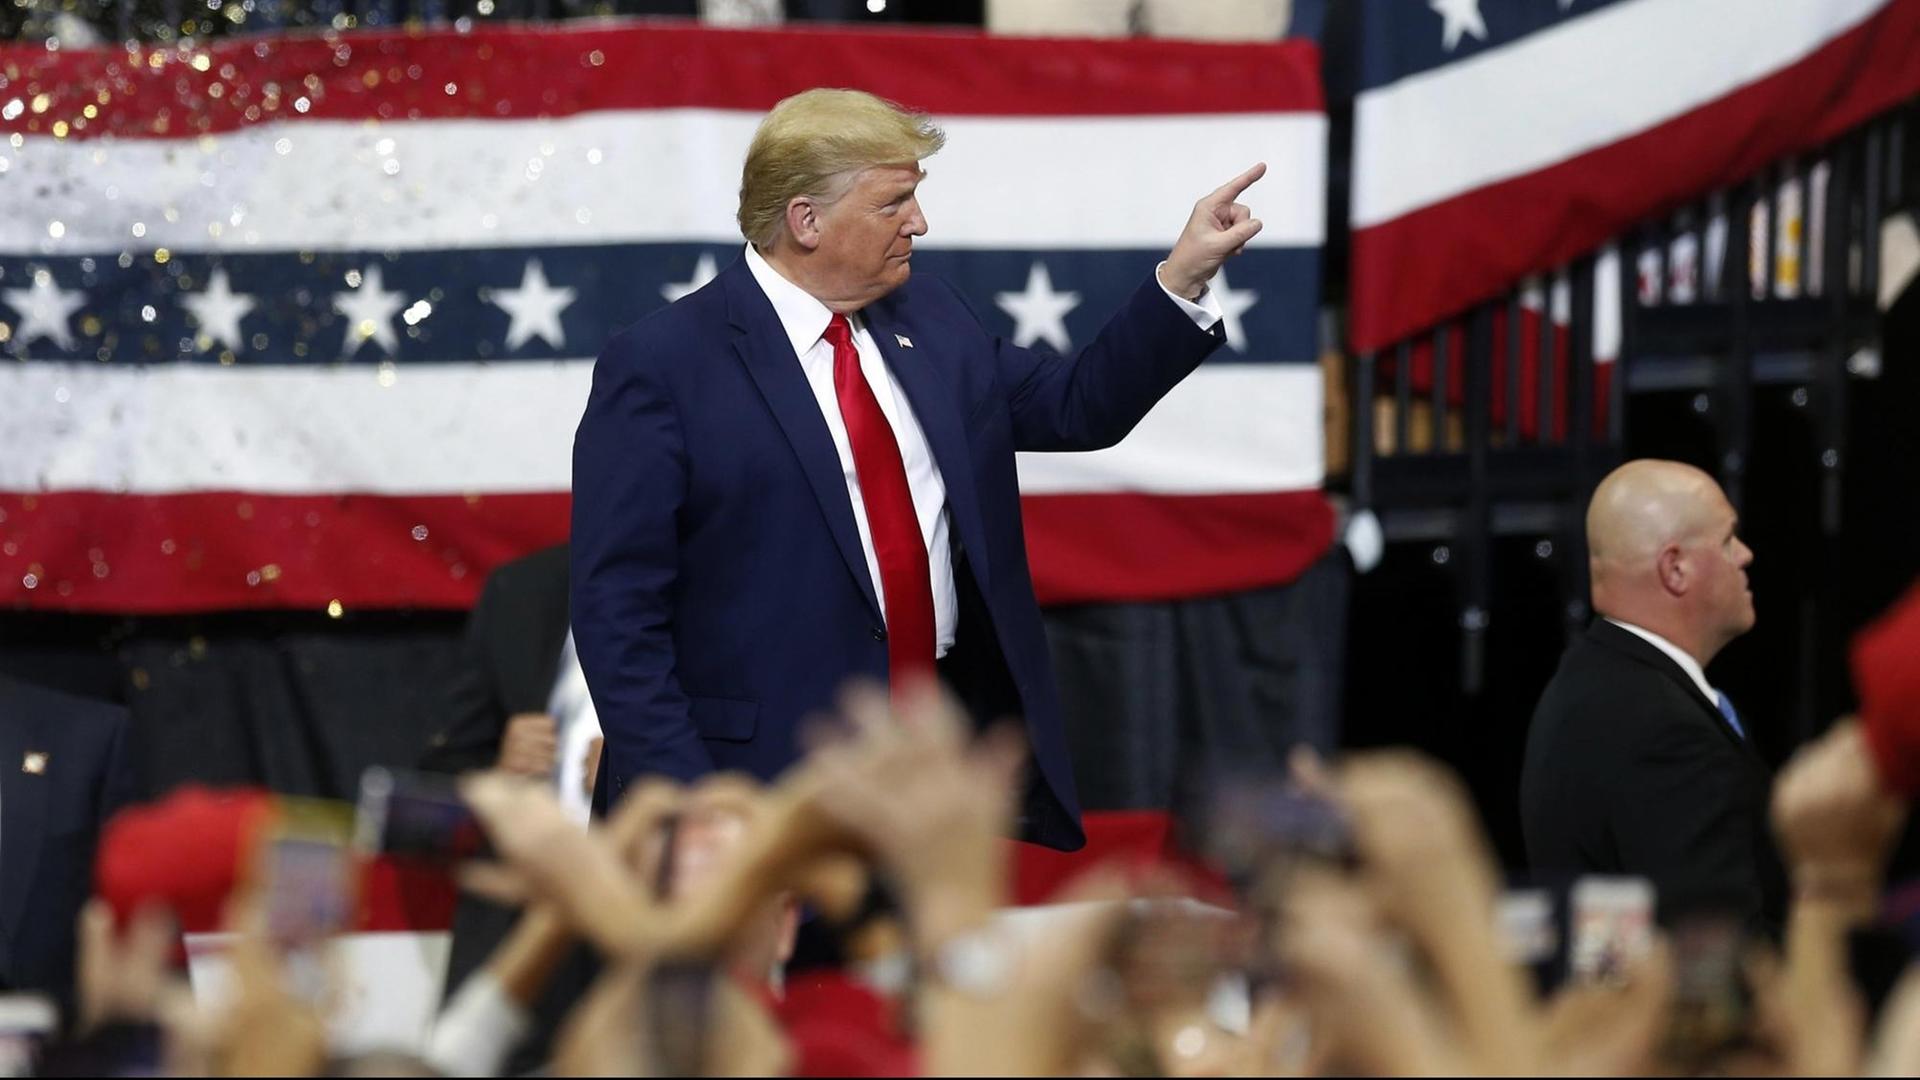 Trump steht auf einer Bühne vor einer Flagge der Republikaner und zeigt mit dem Zeigefinger auf jemanden. Im Vordergrund unscharf viele erhobene Hände seiner Anhänger.